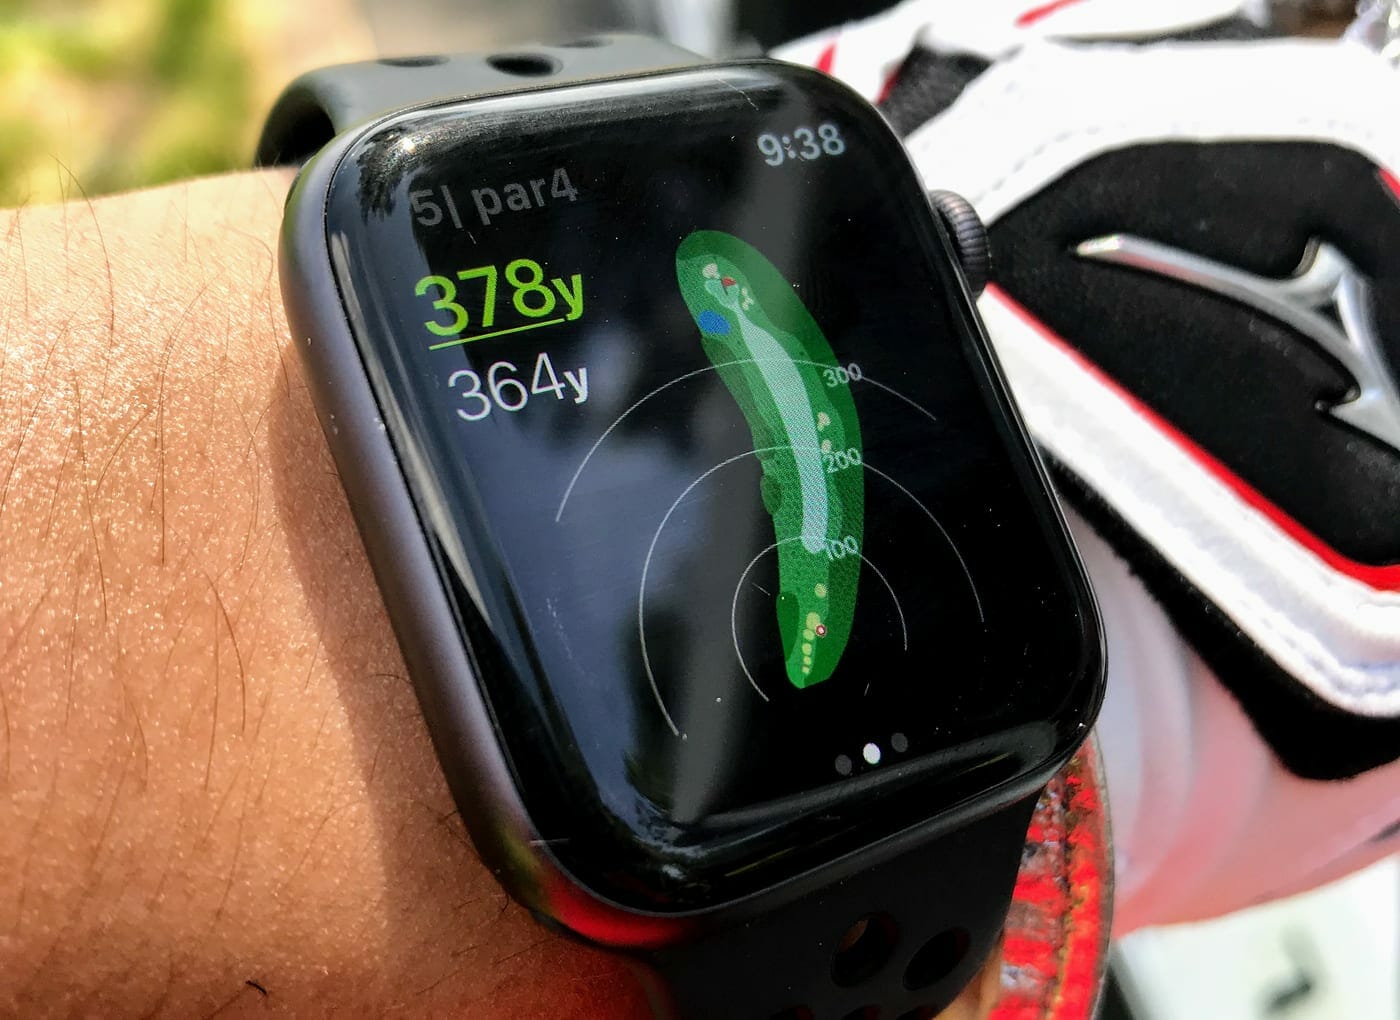 Apple Watch(アップルウォッチ)のGPS距離計アプリ 「ゴルフな日Su」を試す。